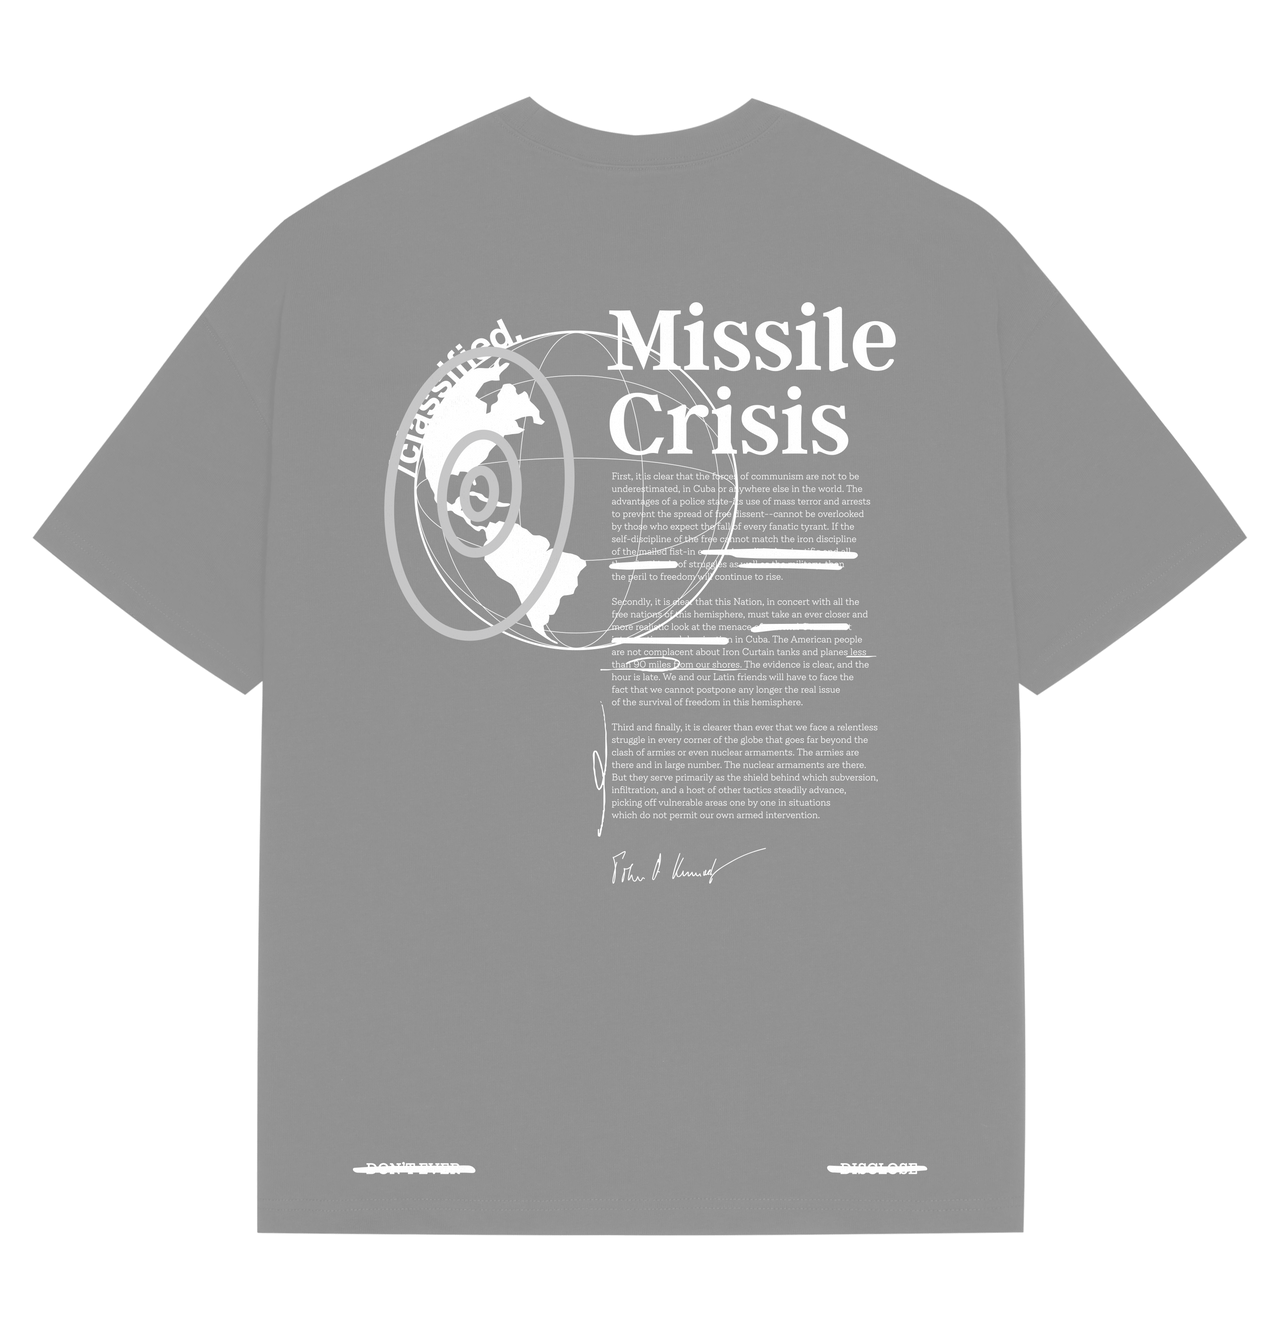 Missile Crisis Tee